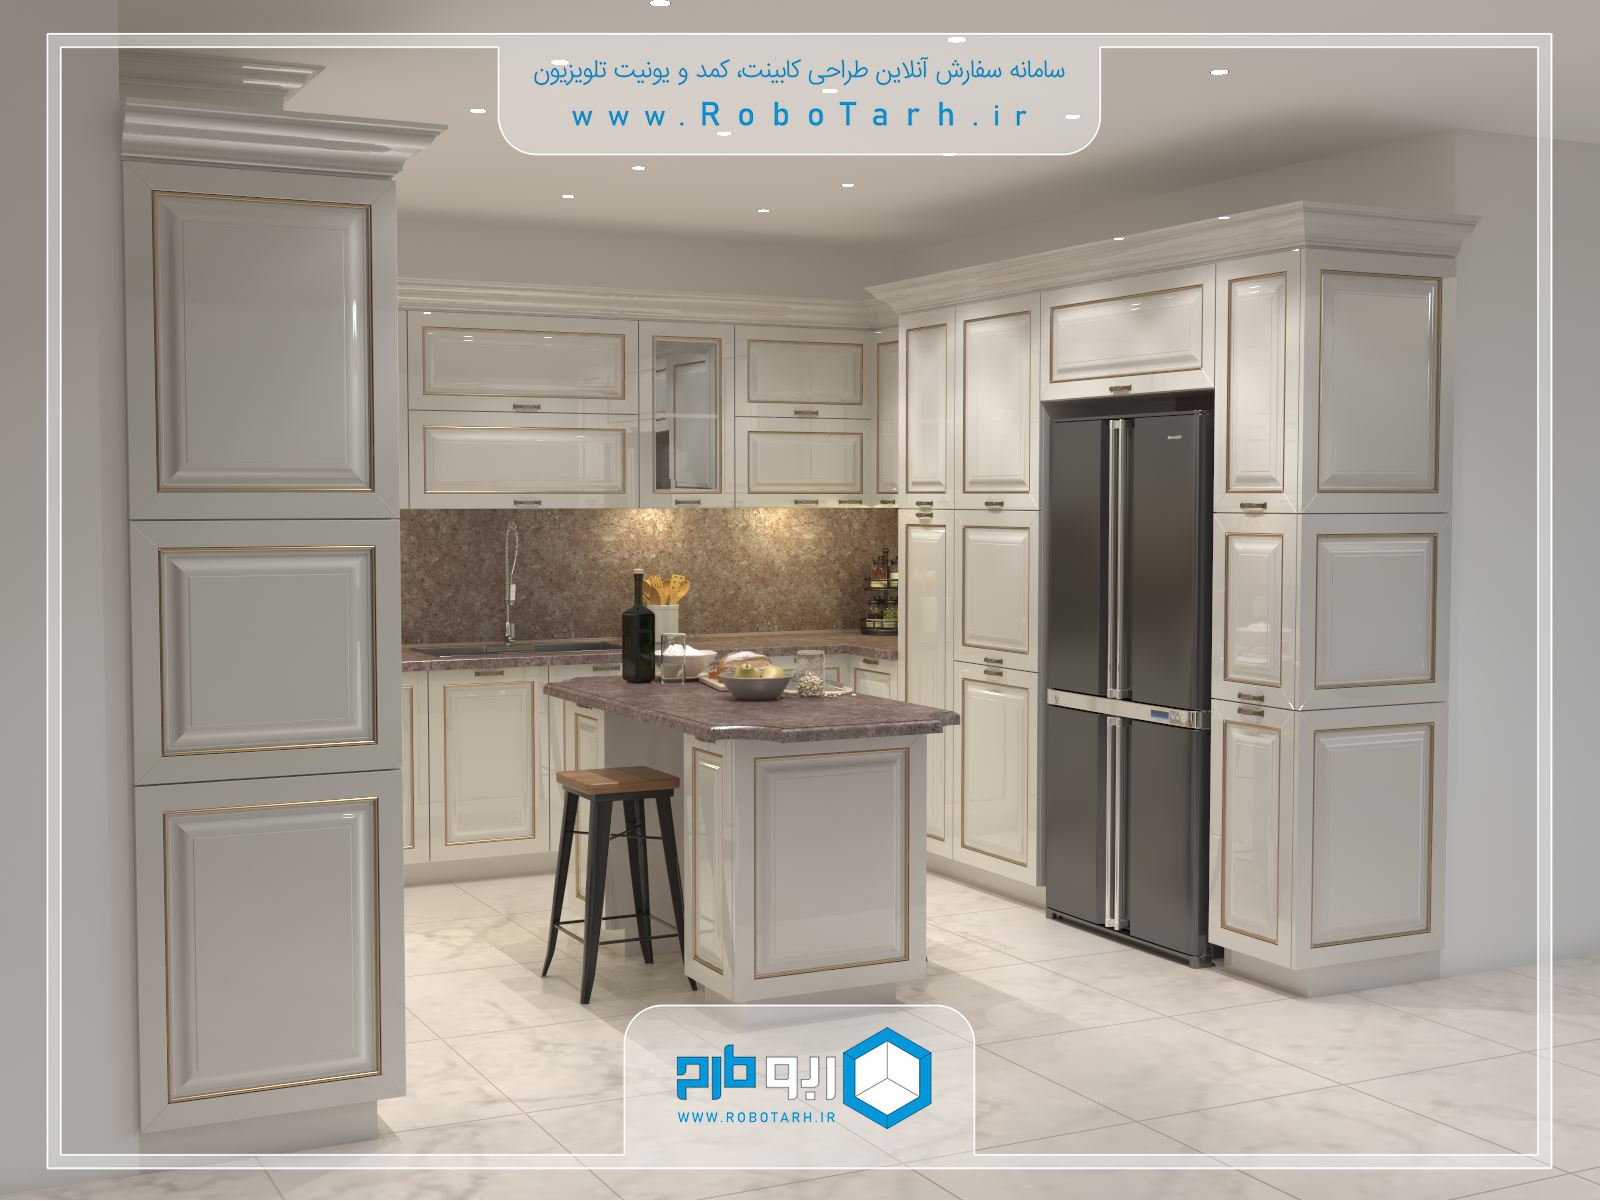 طراحی کابینت آشپزخانه ای به سبک کلاسیک ( ممبران ) با رنگ کرم و طلایی با چیدمان یو شکل - ربوطرح